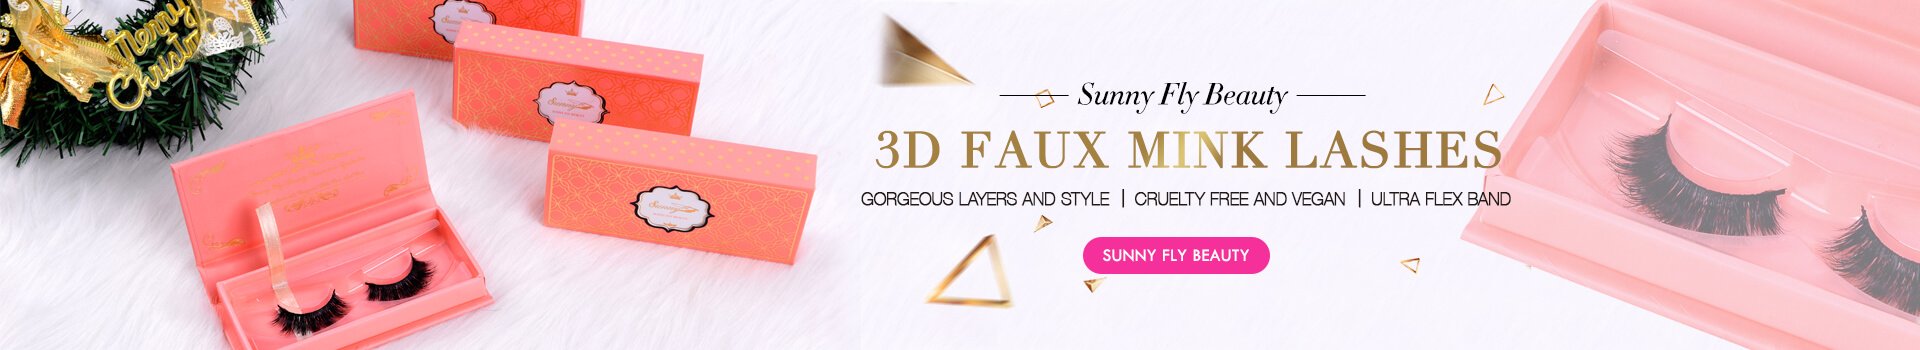 3D Faux Mink Lashes SD33